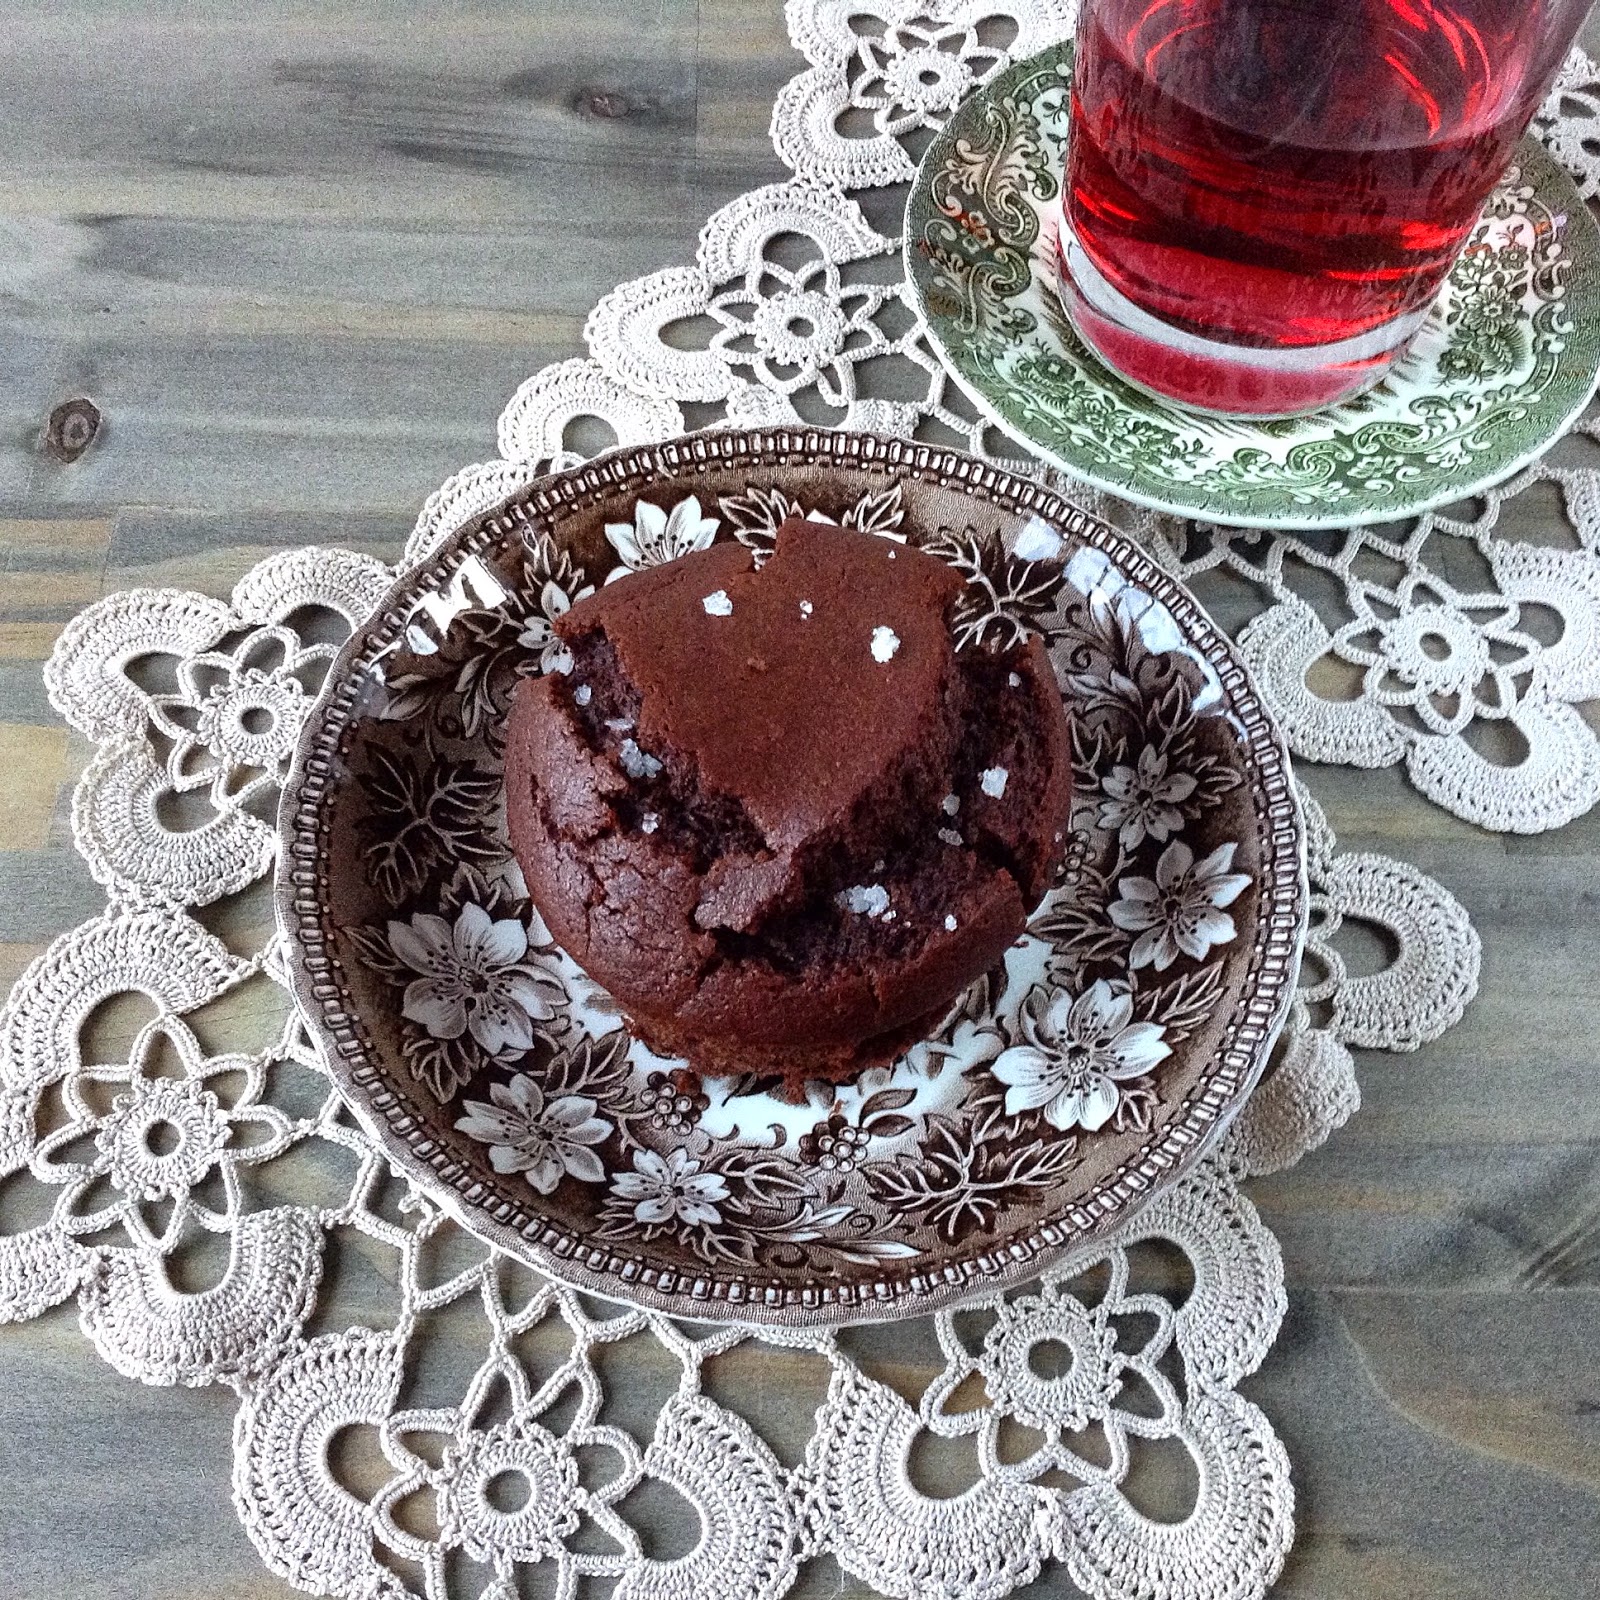 Queques de chocolate extra negro e centeio | Extra dark chocolate and rye muffins